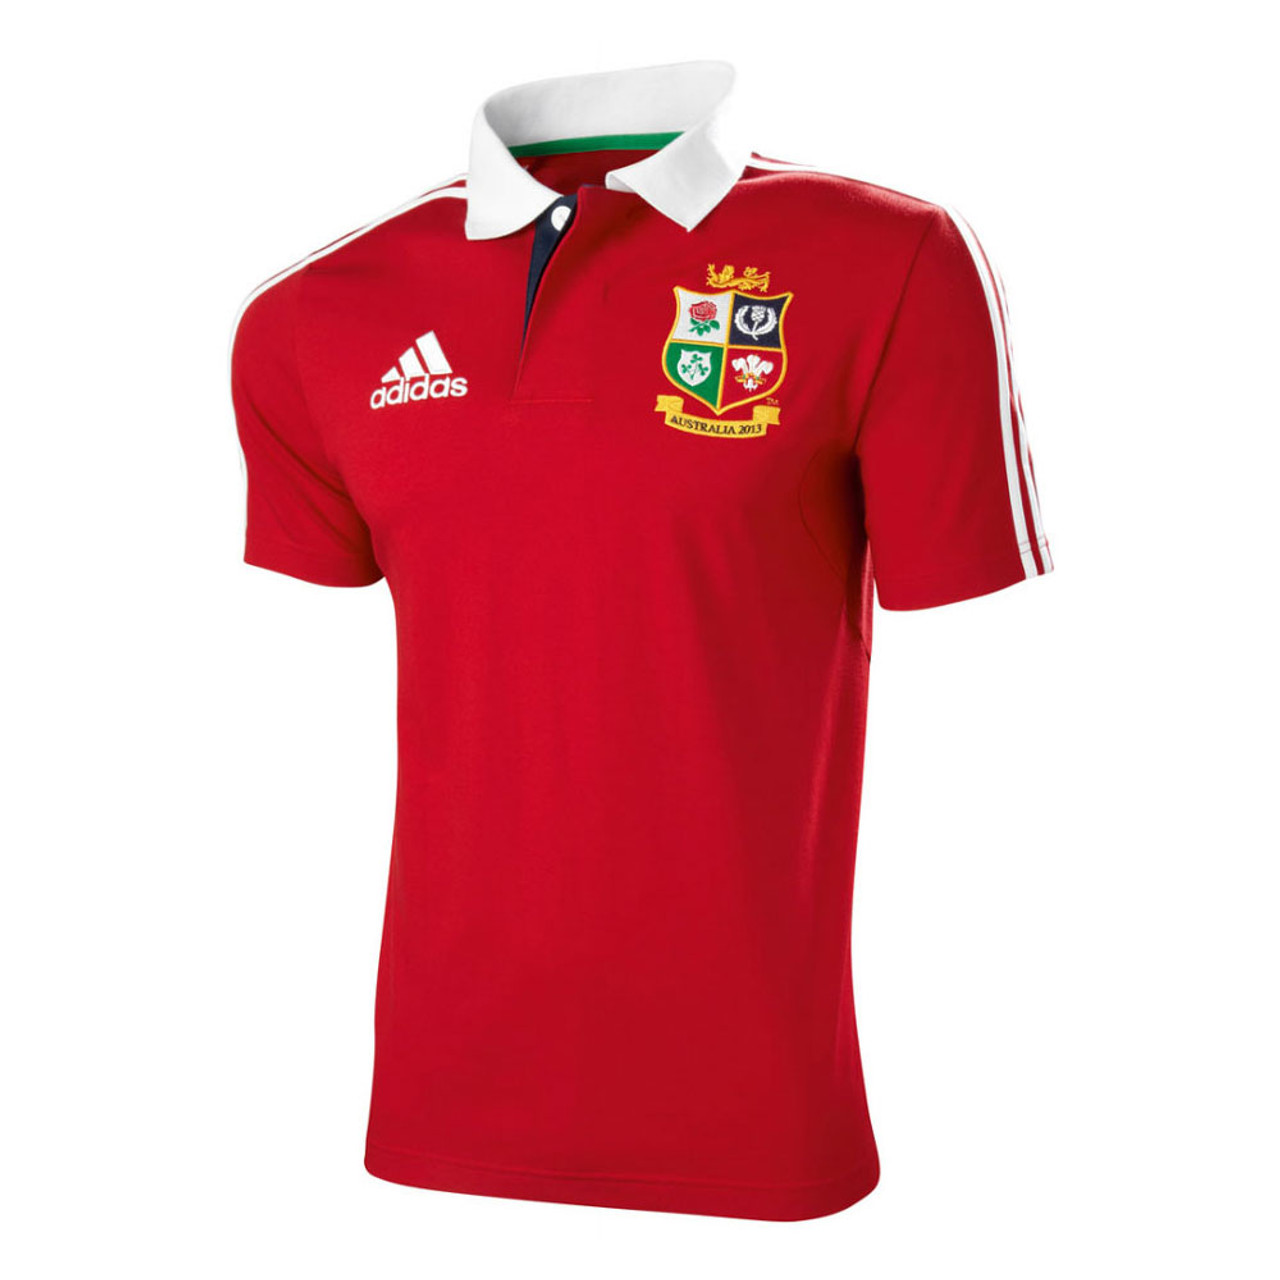 british and irish lions rugby shirt 2013